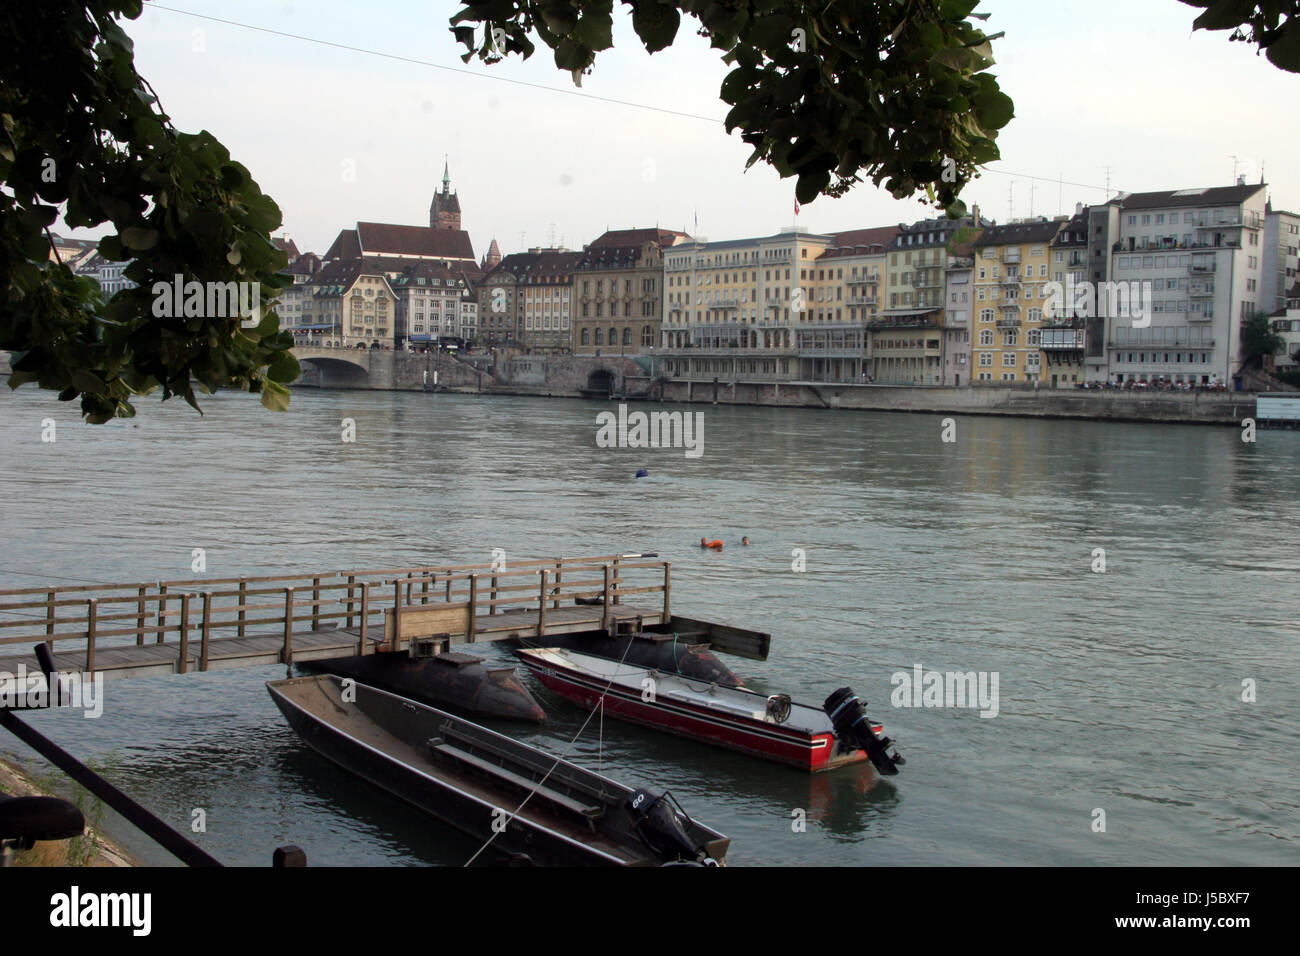 Stadt Hafen Rhein Schweiz Stadtbild Häfen Stadt Basel anzeigen Stockfoto